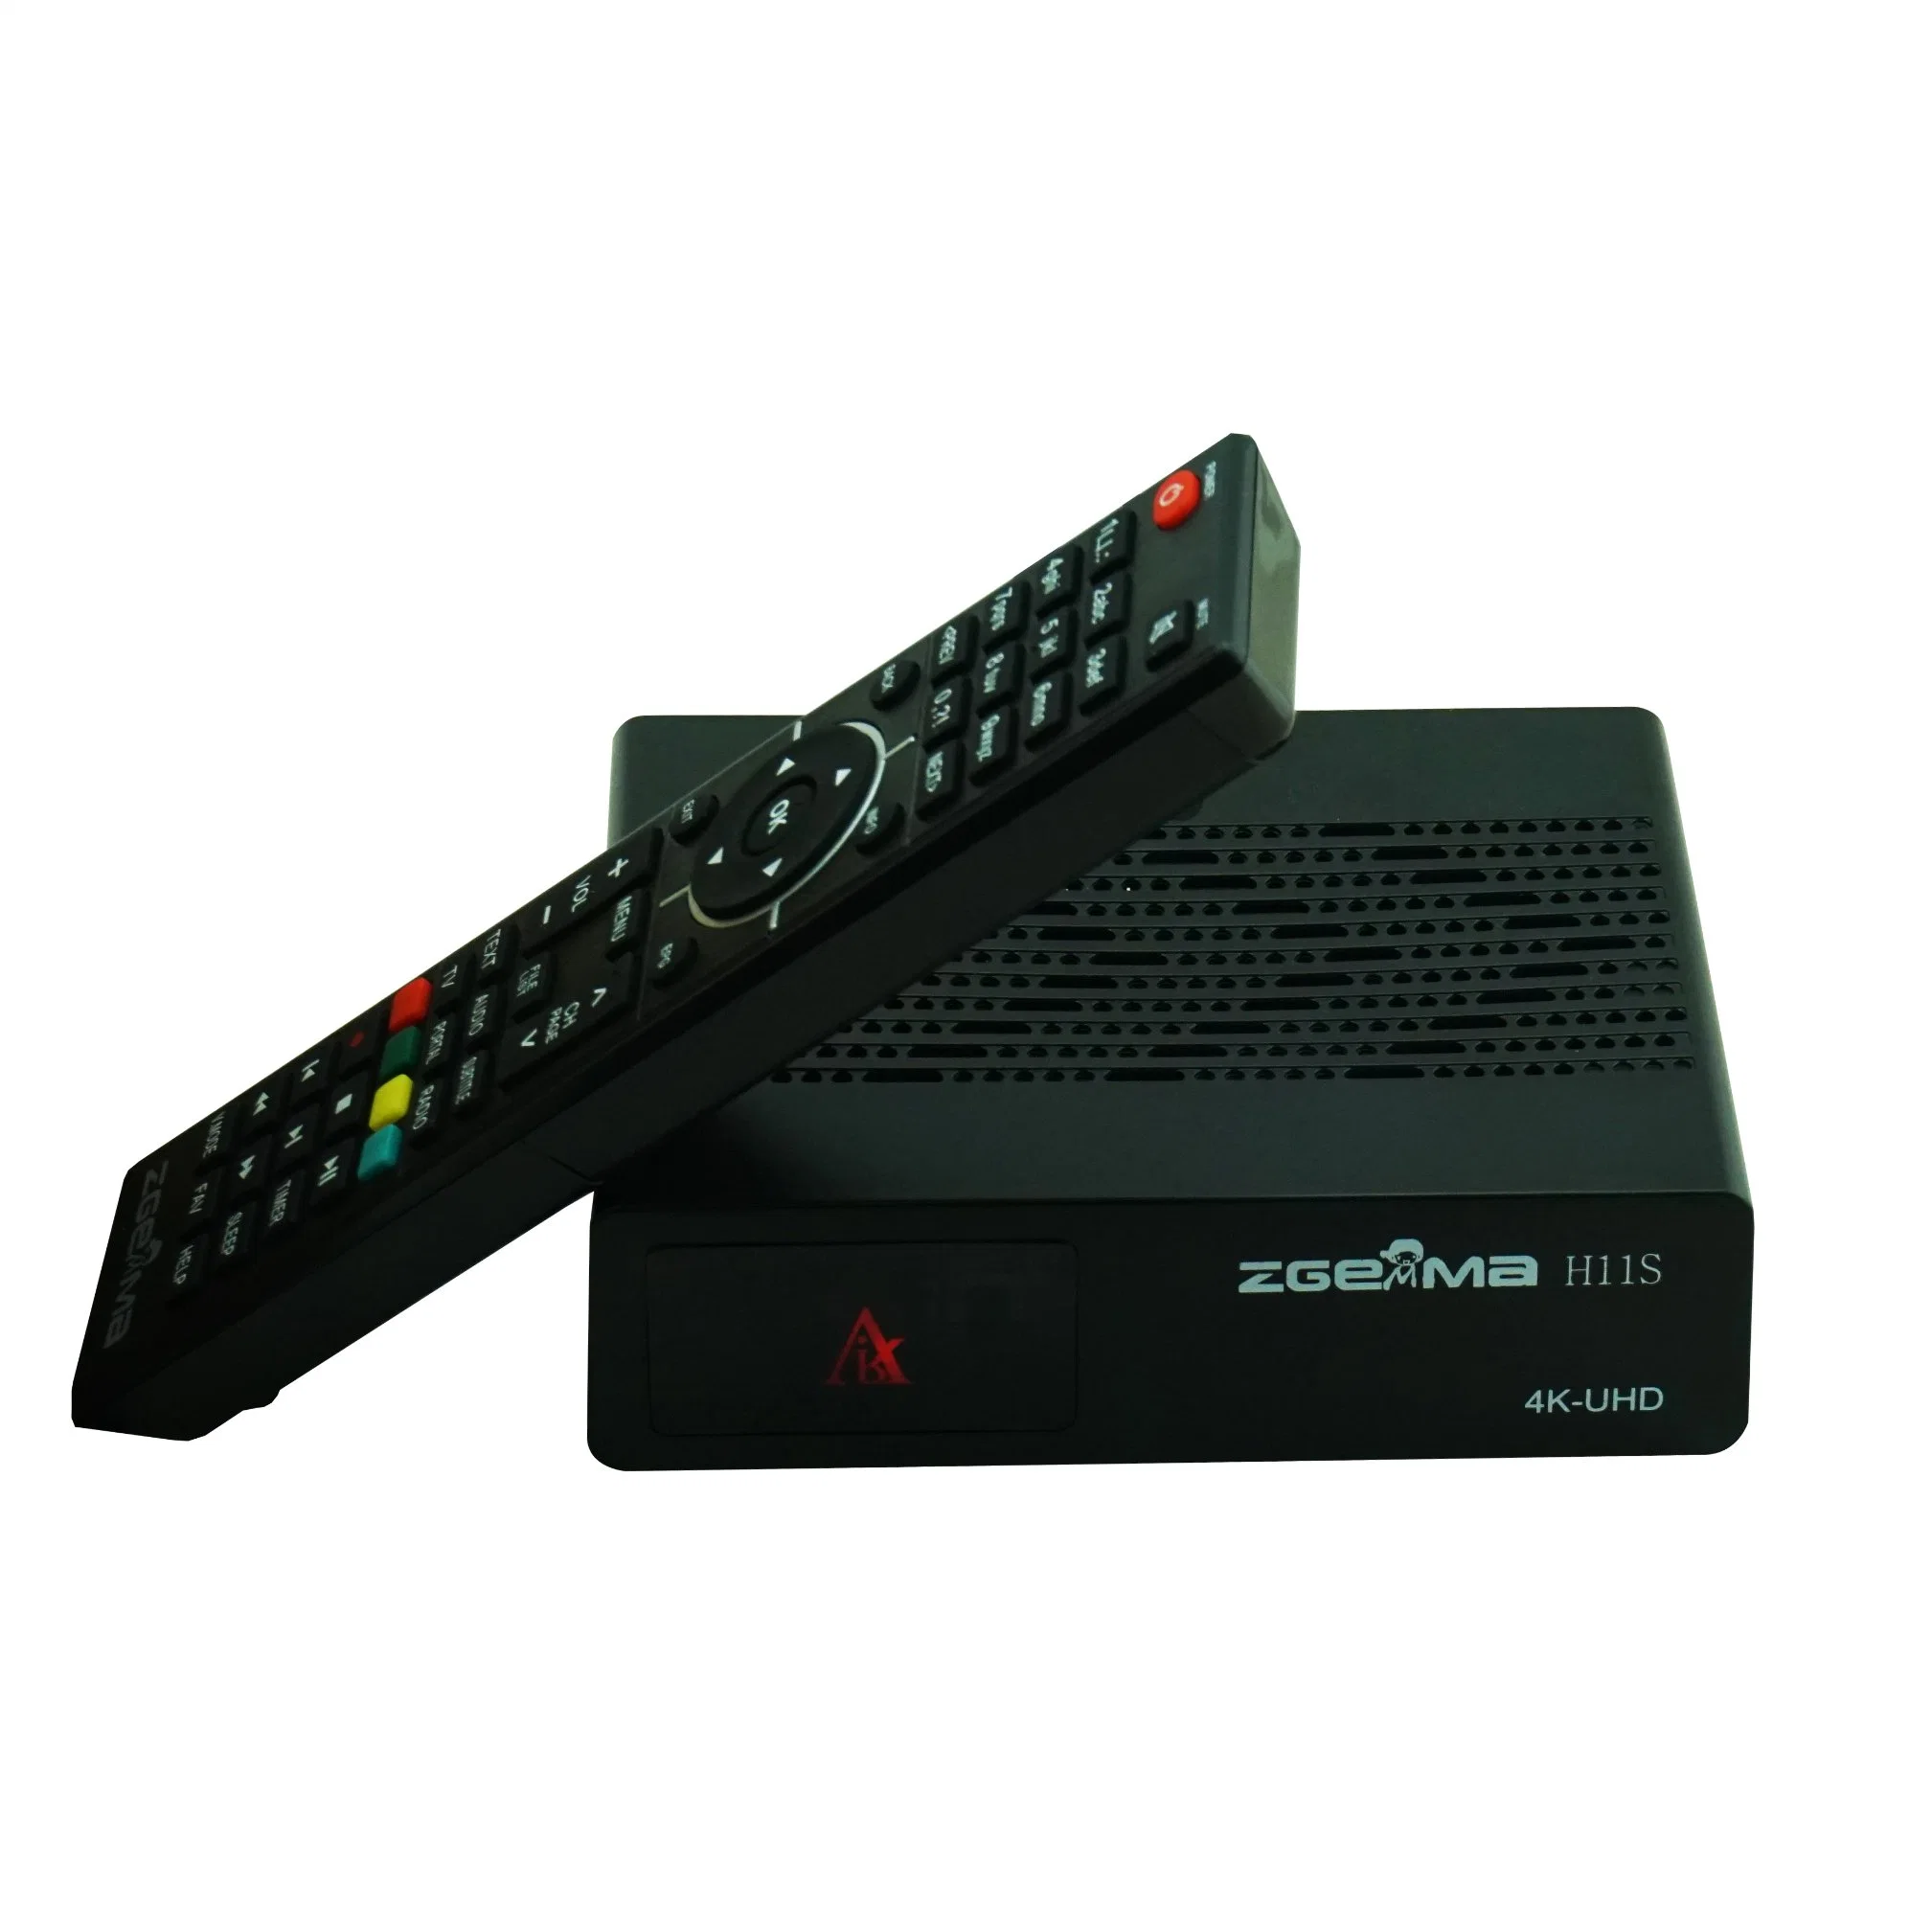 Zgemma H11s 4K UHD Linux DVB-S2X مستقبل الأقمار الصناعية